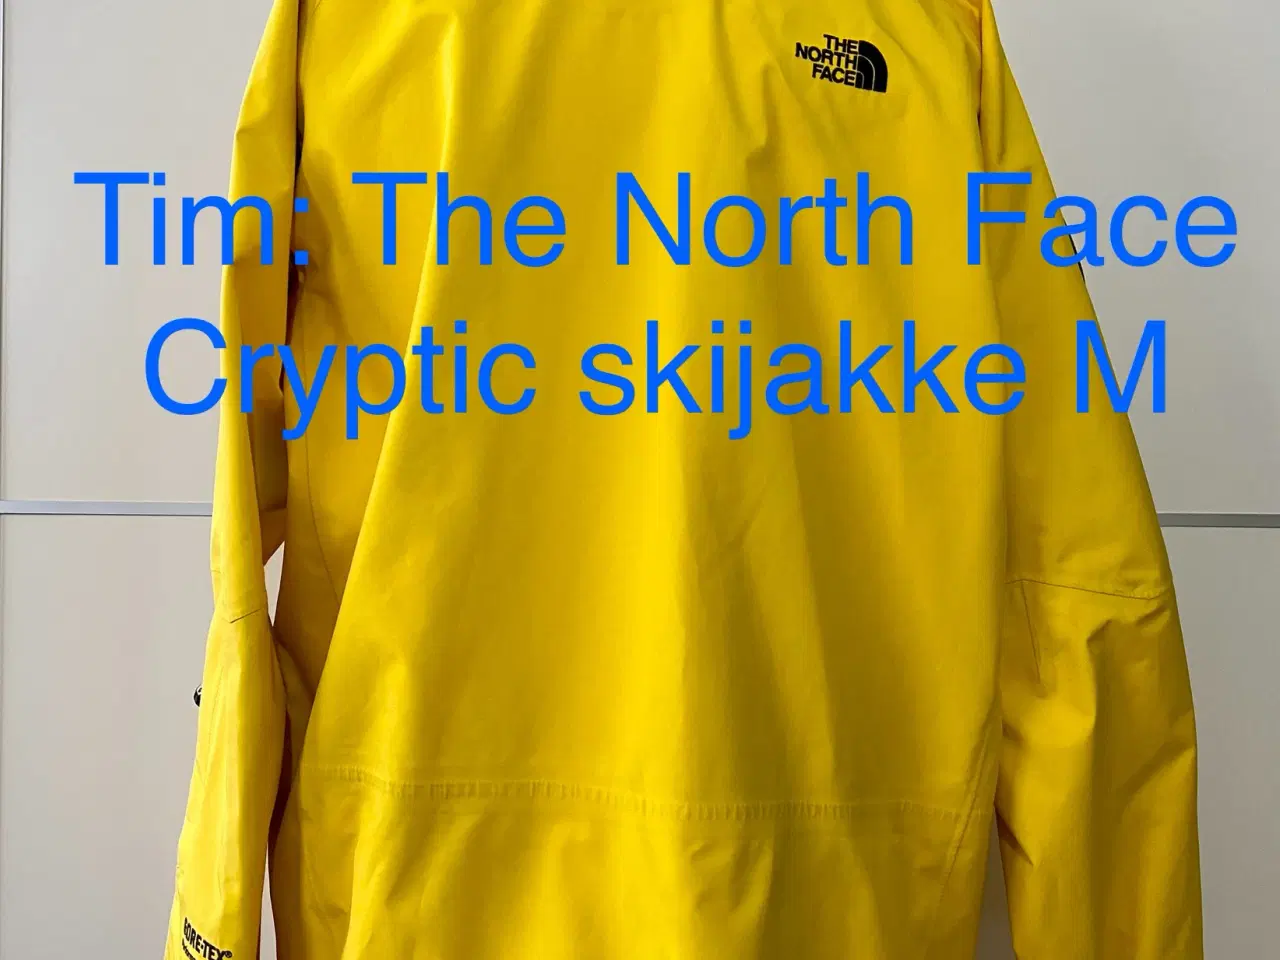 Billede 11 - The North Face Cryptic skijakke M 